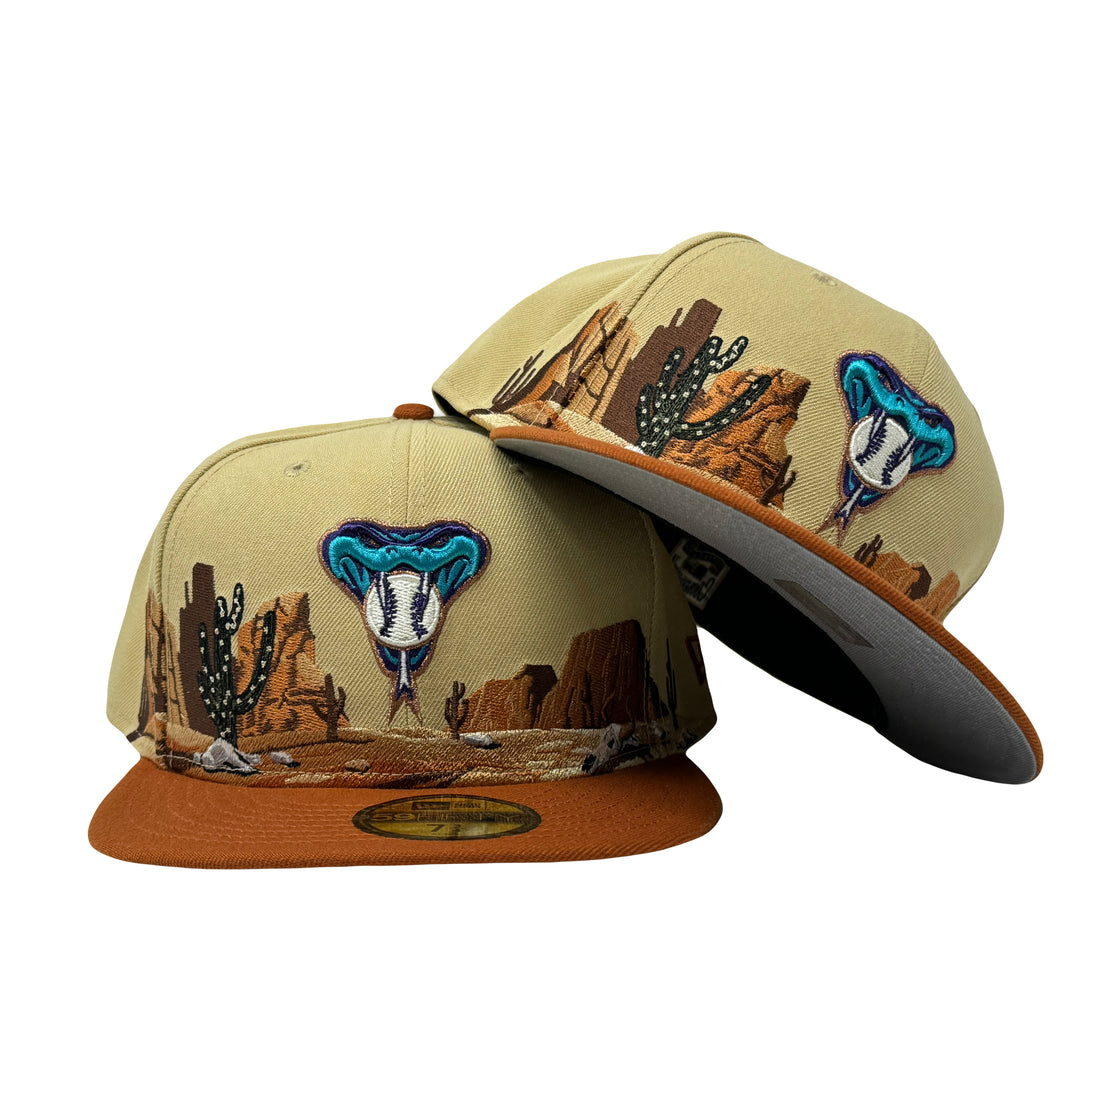 Arizona Diamondbacks Desert Pack 5950 New Era Fitted Hat